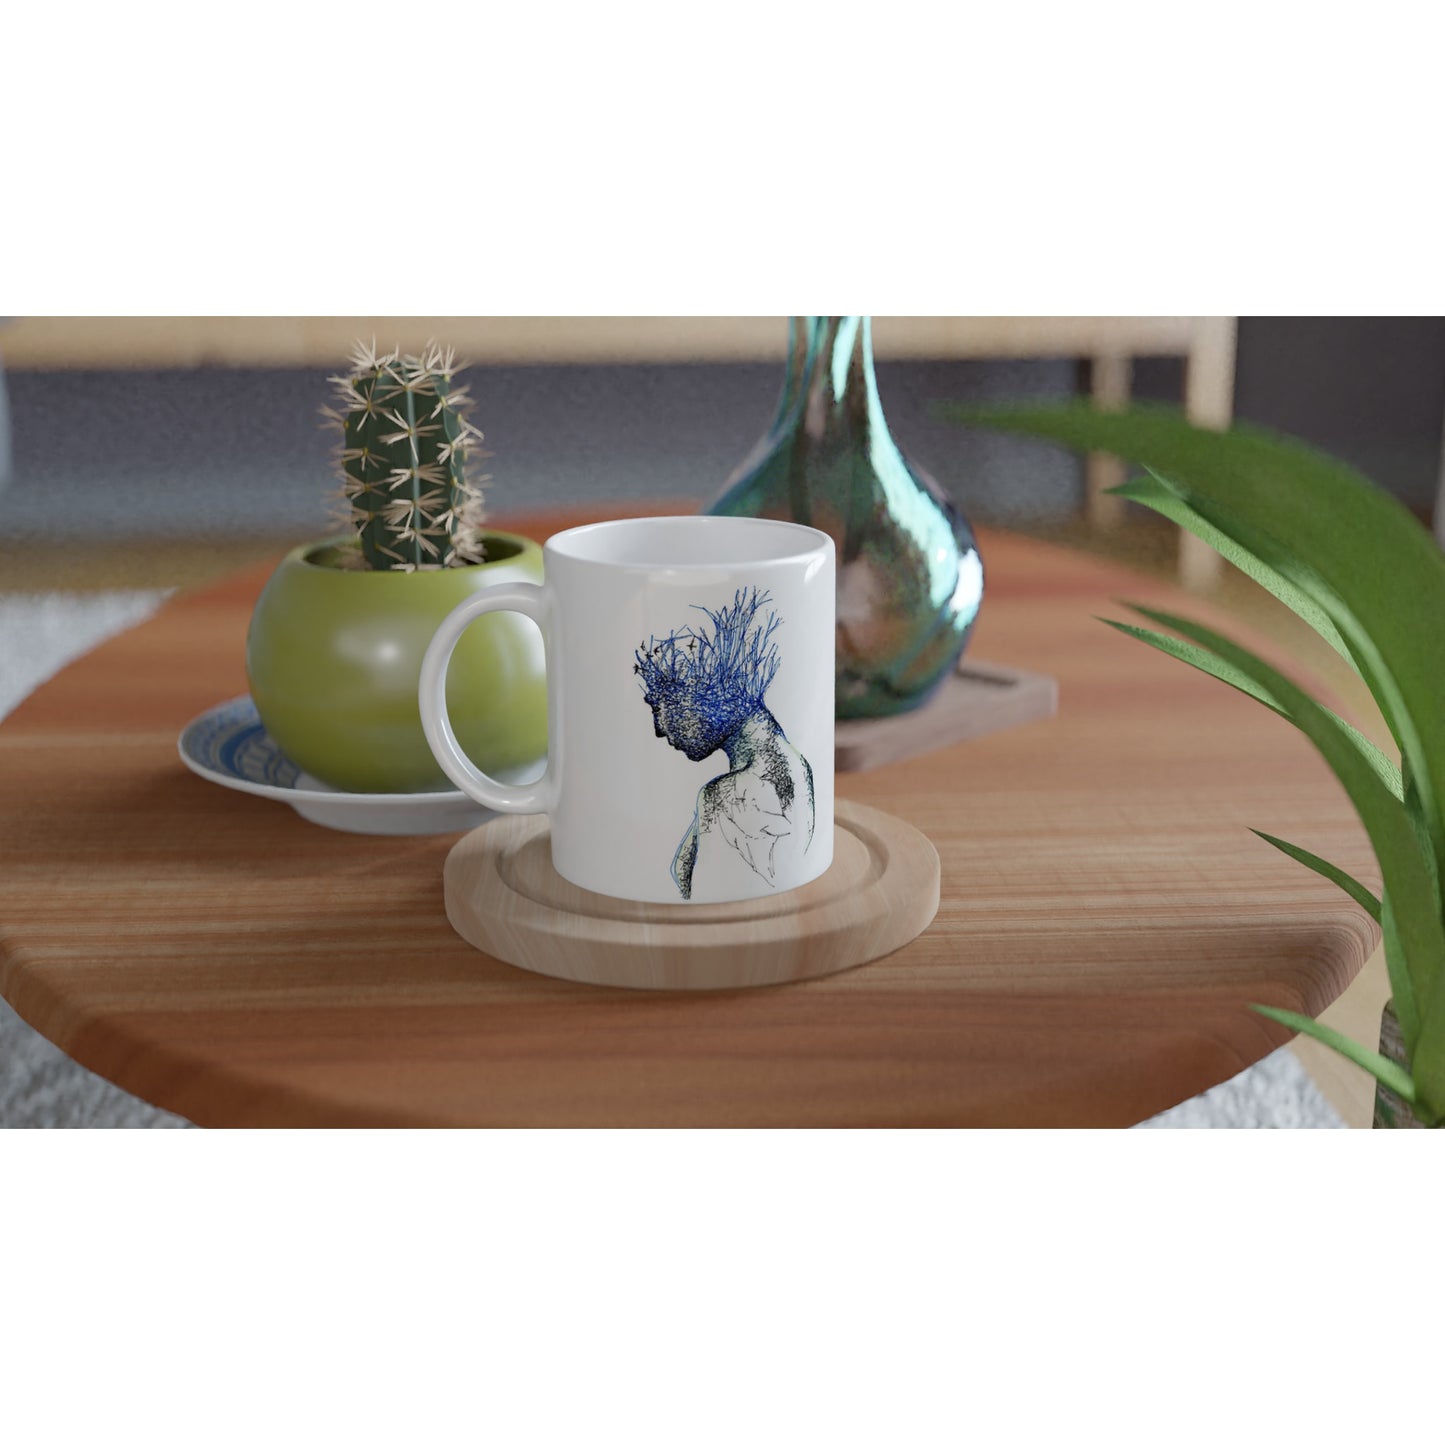 Neuroplasticity Ceramic Mug